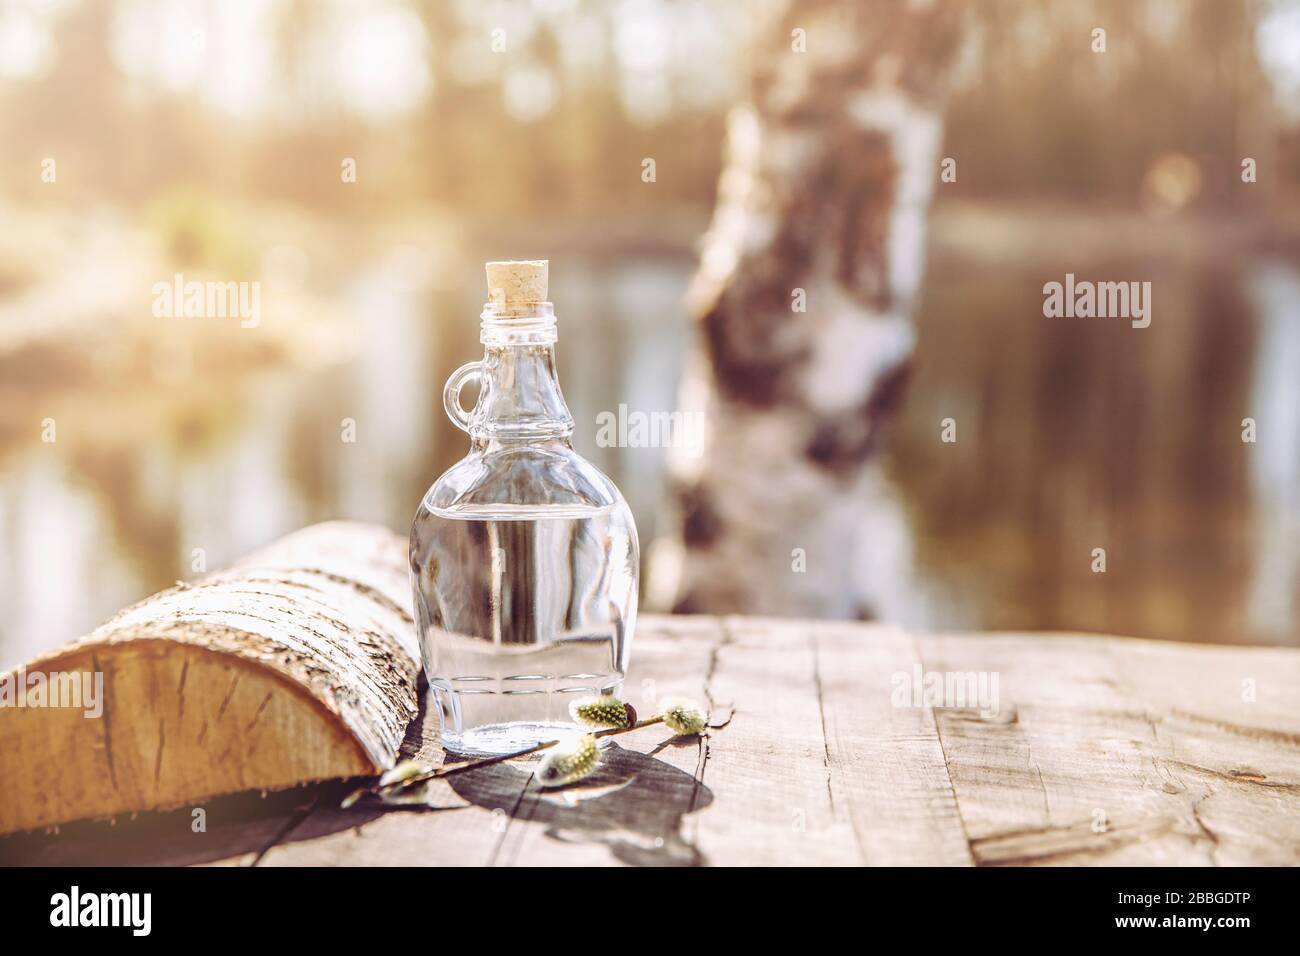 Jugo de abedul fresco filtrado savia en botella de vidrio transparente sobre mesa rústica amarilla, al aire libre en primavera, troncos de abedul en el fondo. Foto de stock